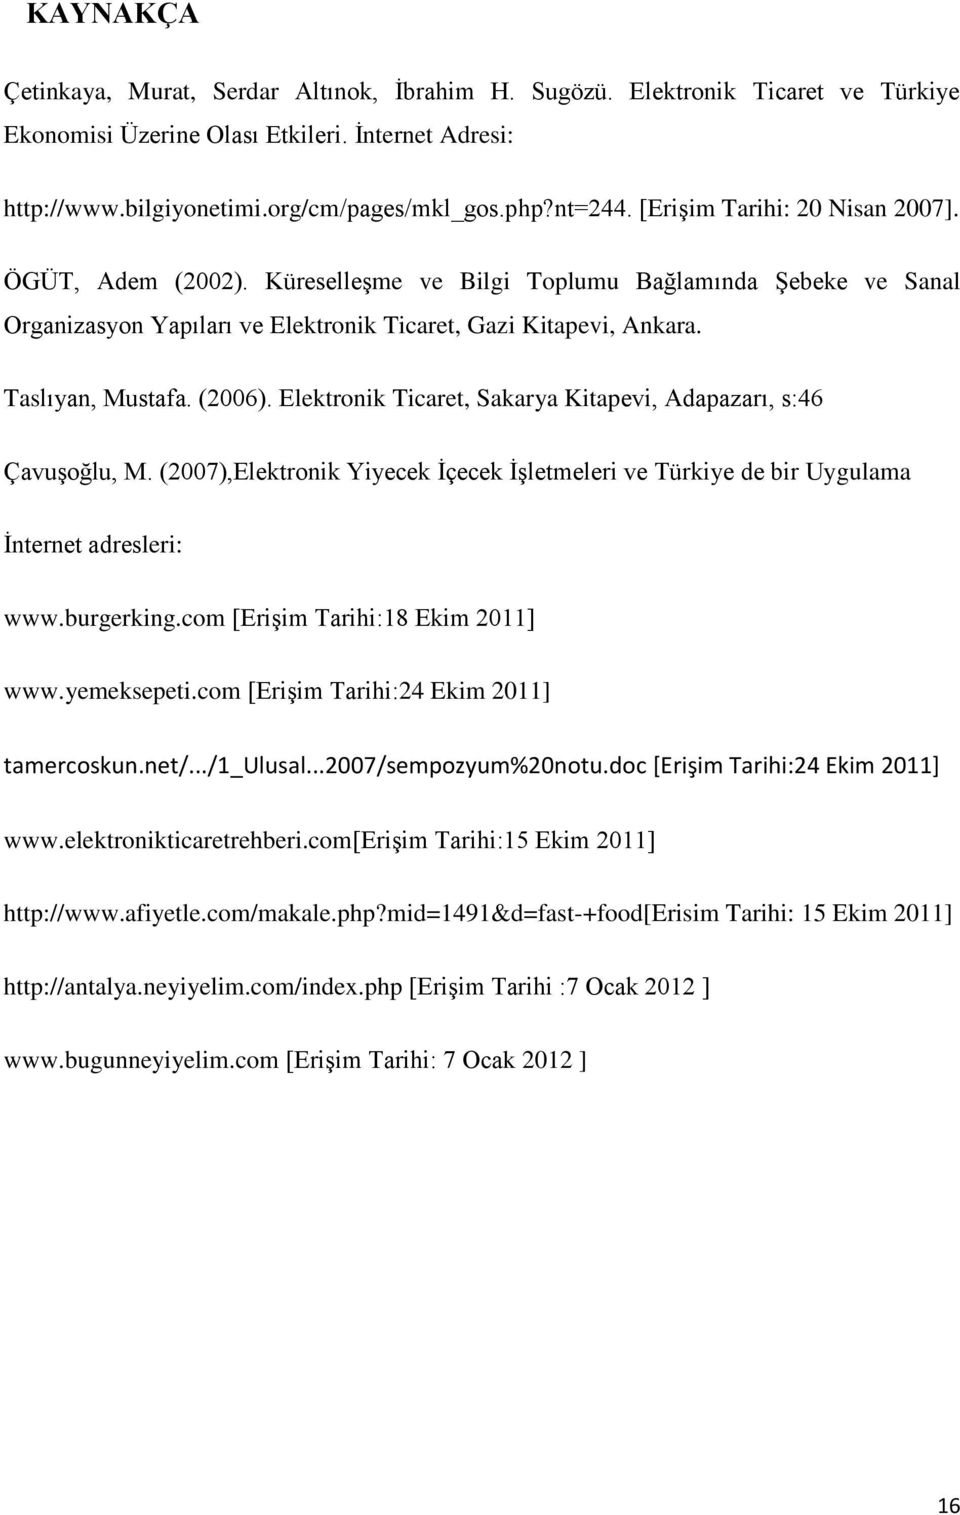 (2006). Elektronik Ticaret, Sakarya Kitapevi, Adapazarı, s:46 Çavuşoğlu, M. (2007),Elektronik Yiyecek İçecek İşletmeleri ve Türkiye de bir Uygulama İnternet adresleri: www.burgerking.